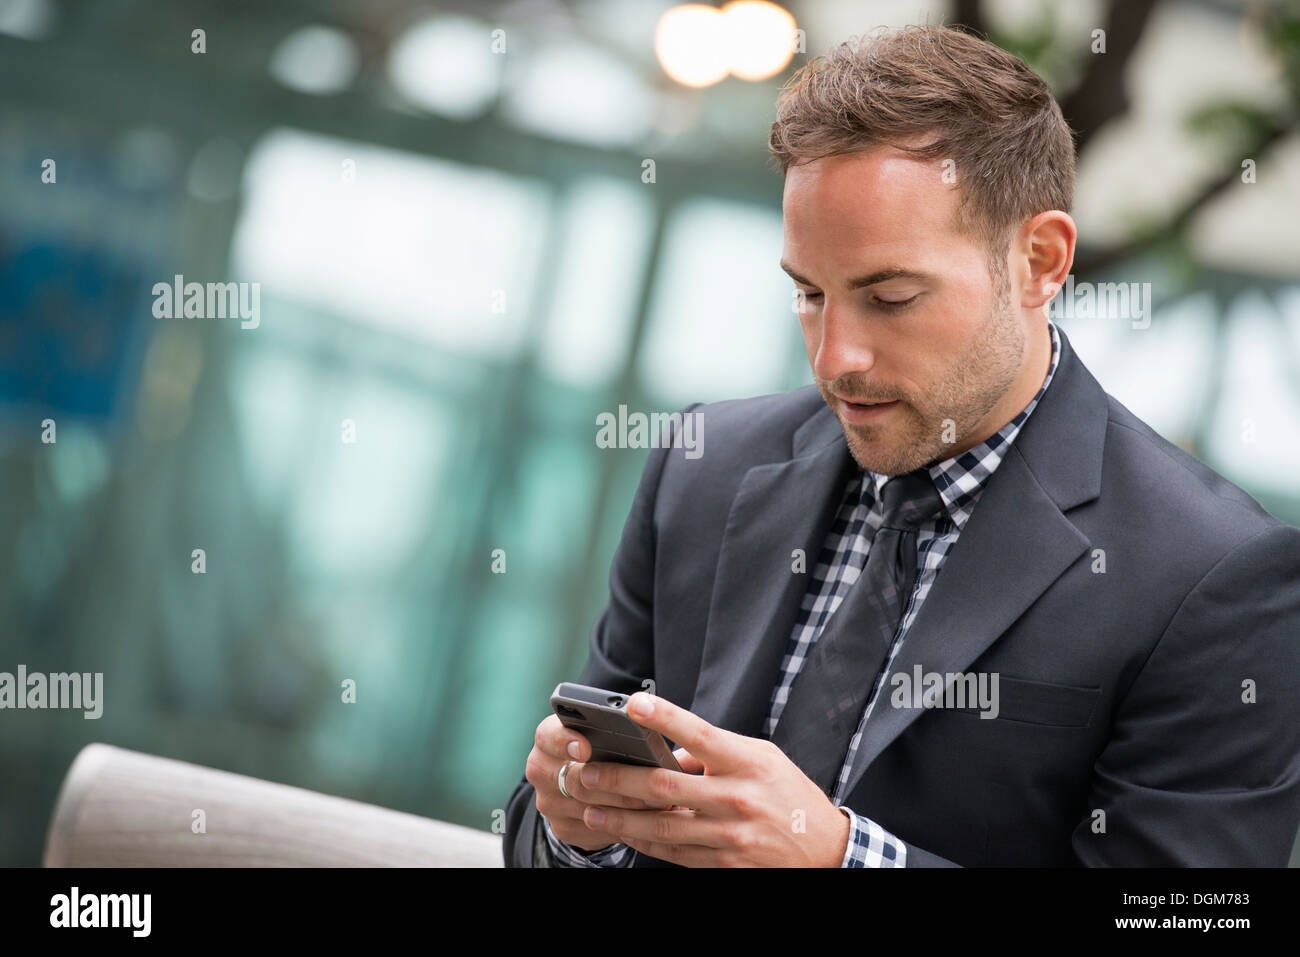 Business-Leute. Ein Mann im Anzug. Ein Mann mit kurzen roten Haaren und einem Bart, trägt einen Anzug auf seinem Handy. Stockfoto